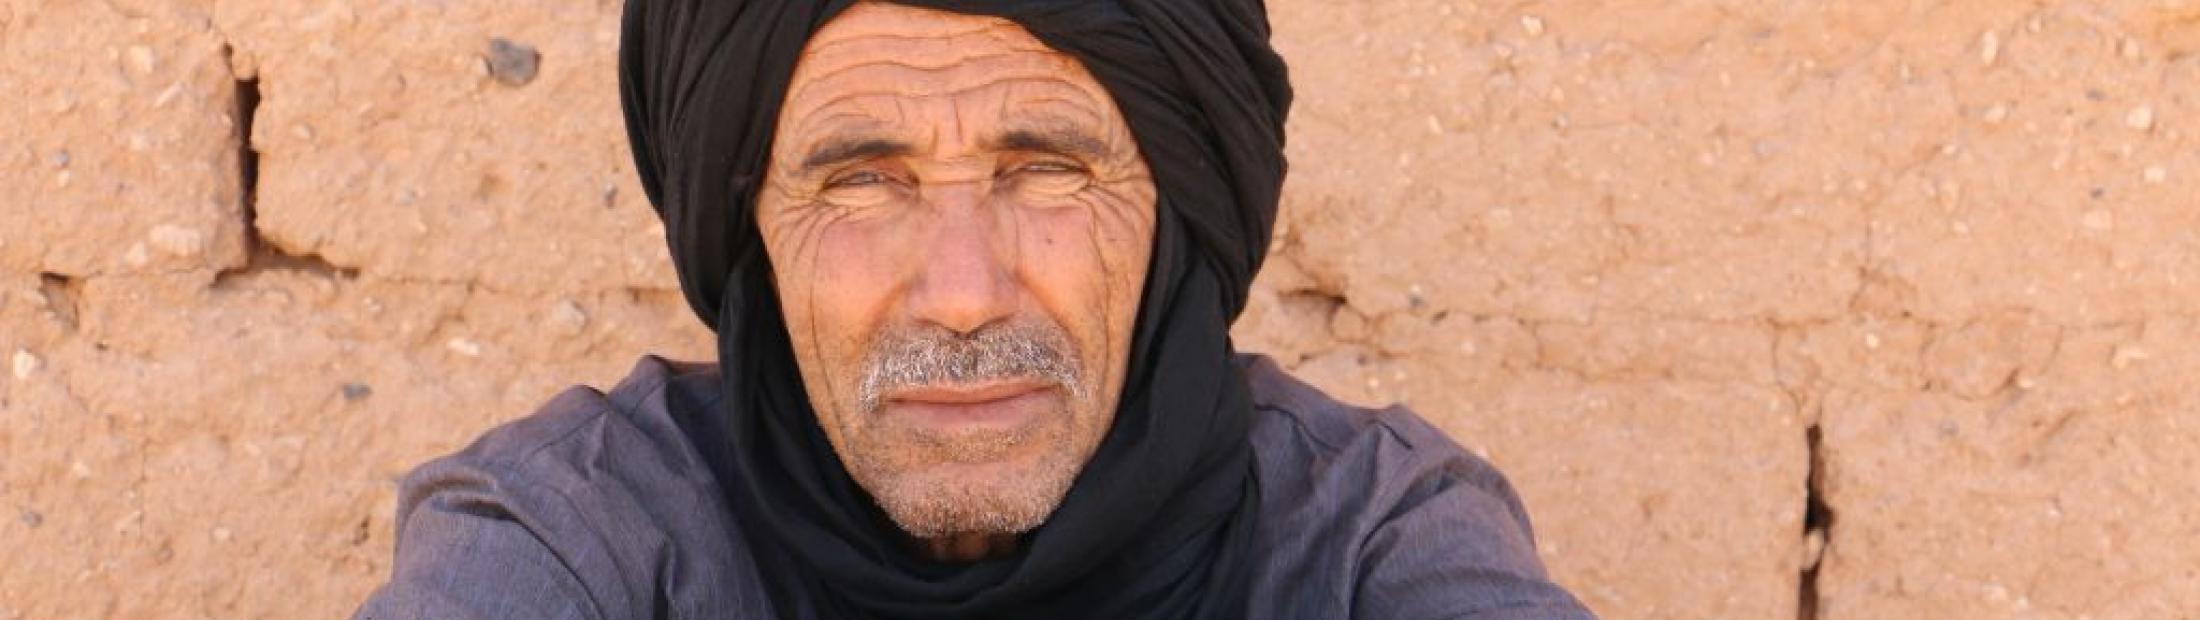 Refugiados saharauis: 45 años viviendo en campamentos de Argelia